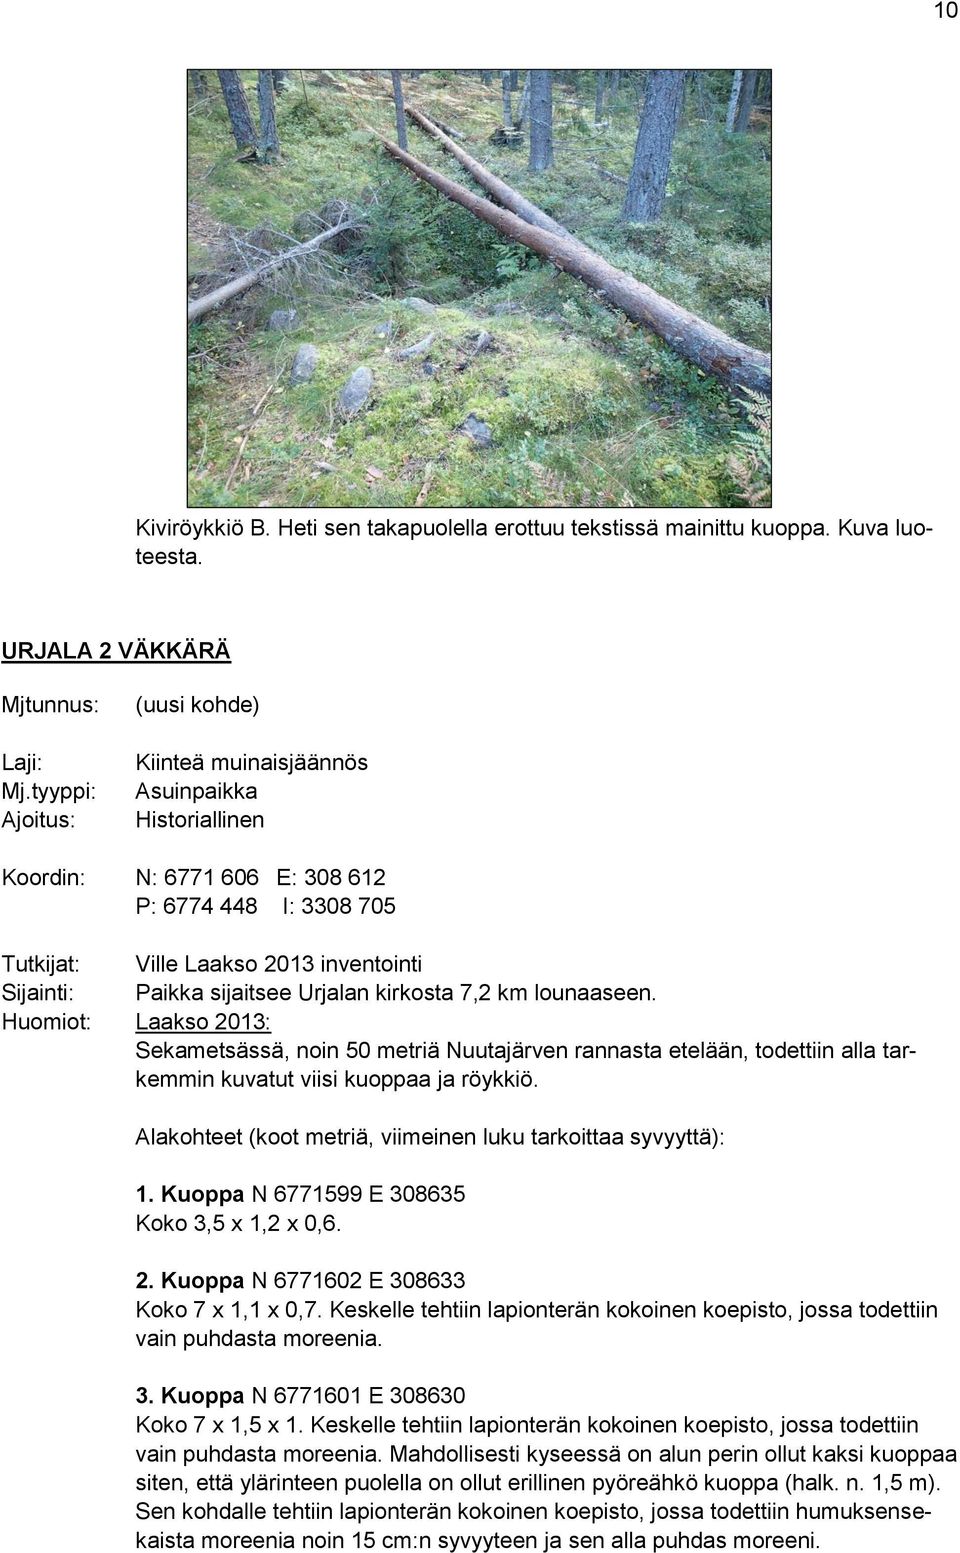 sijaitsee Urjalan kirkosta 7,2 km lounaaseen. Huomiot: Laakso 2013: Sekametsässä, noin 50 metriä Nuutajärven rannasta etelään, todettiin alla tarkemmin kuvatut viisi kuoppaa ja röykkiö.